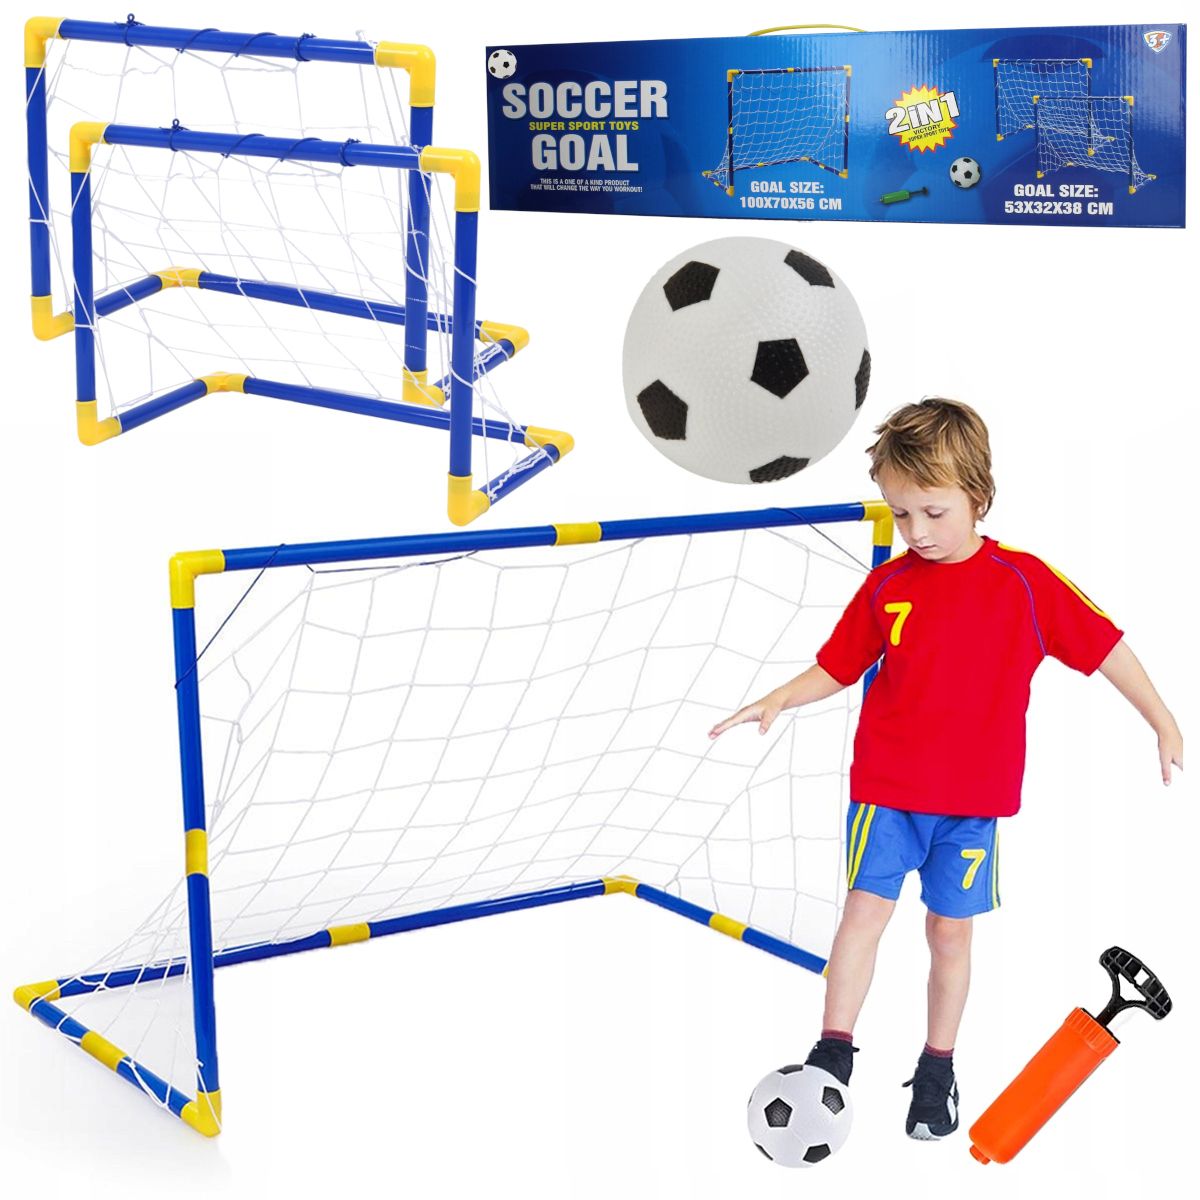 Duża bramka piłkarska dla dzieci zestaw 2w1 + piłka X423X